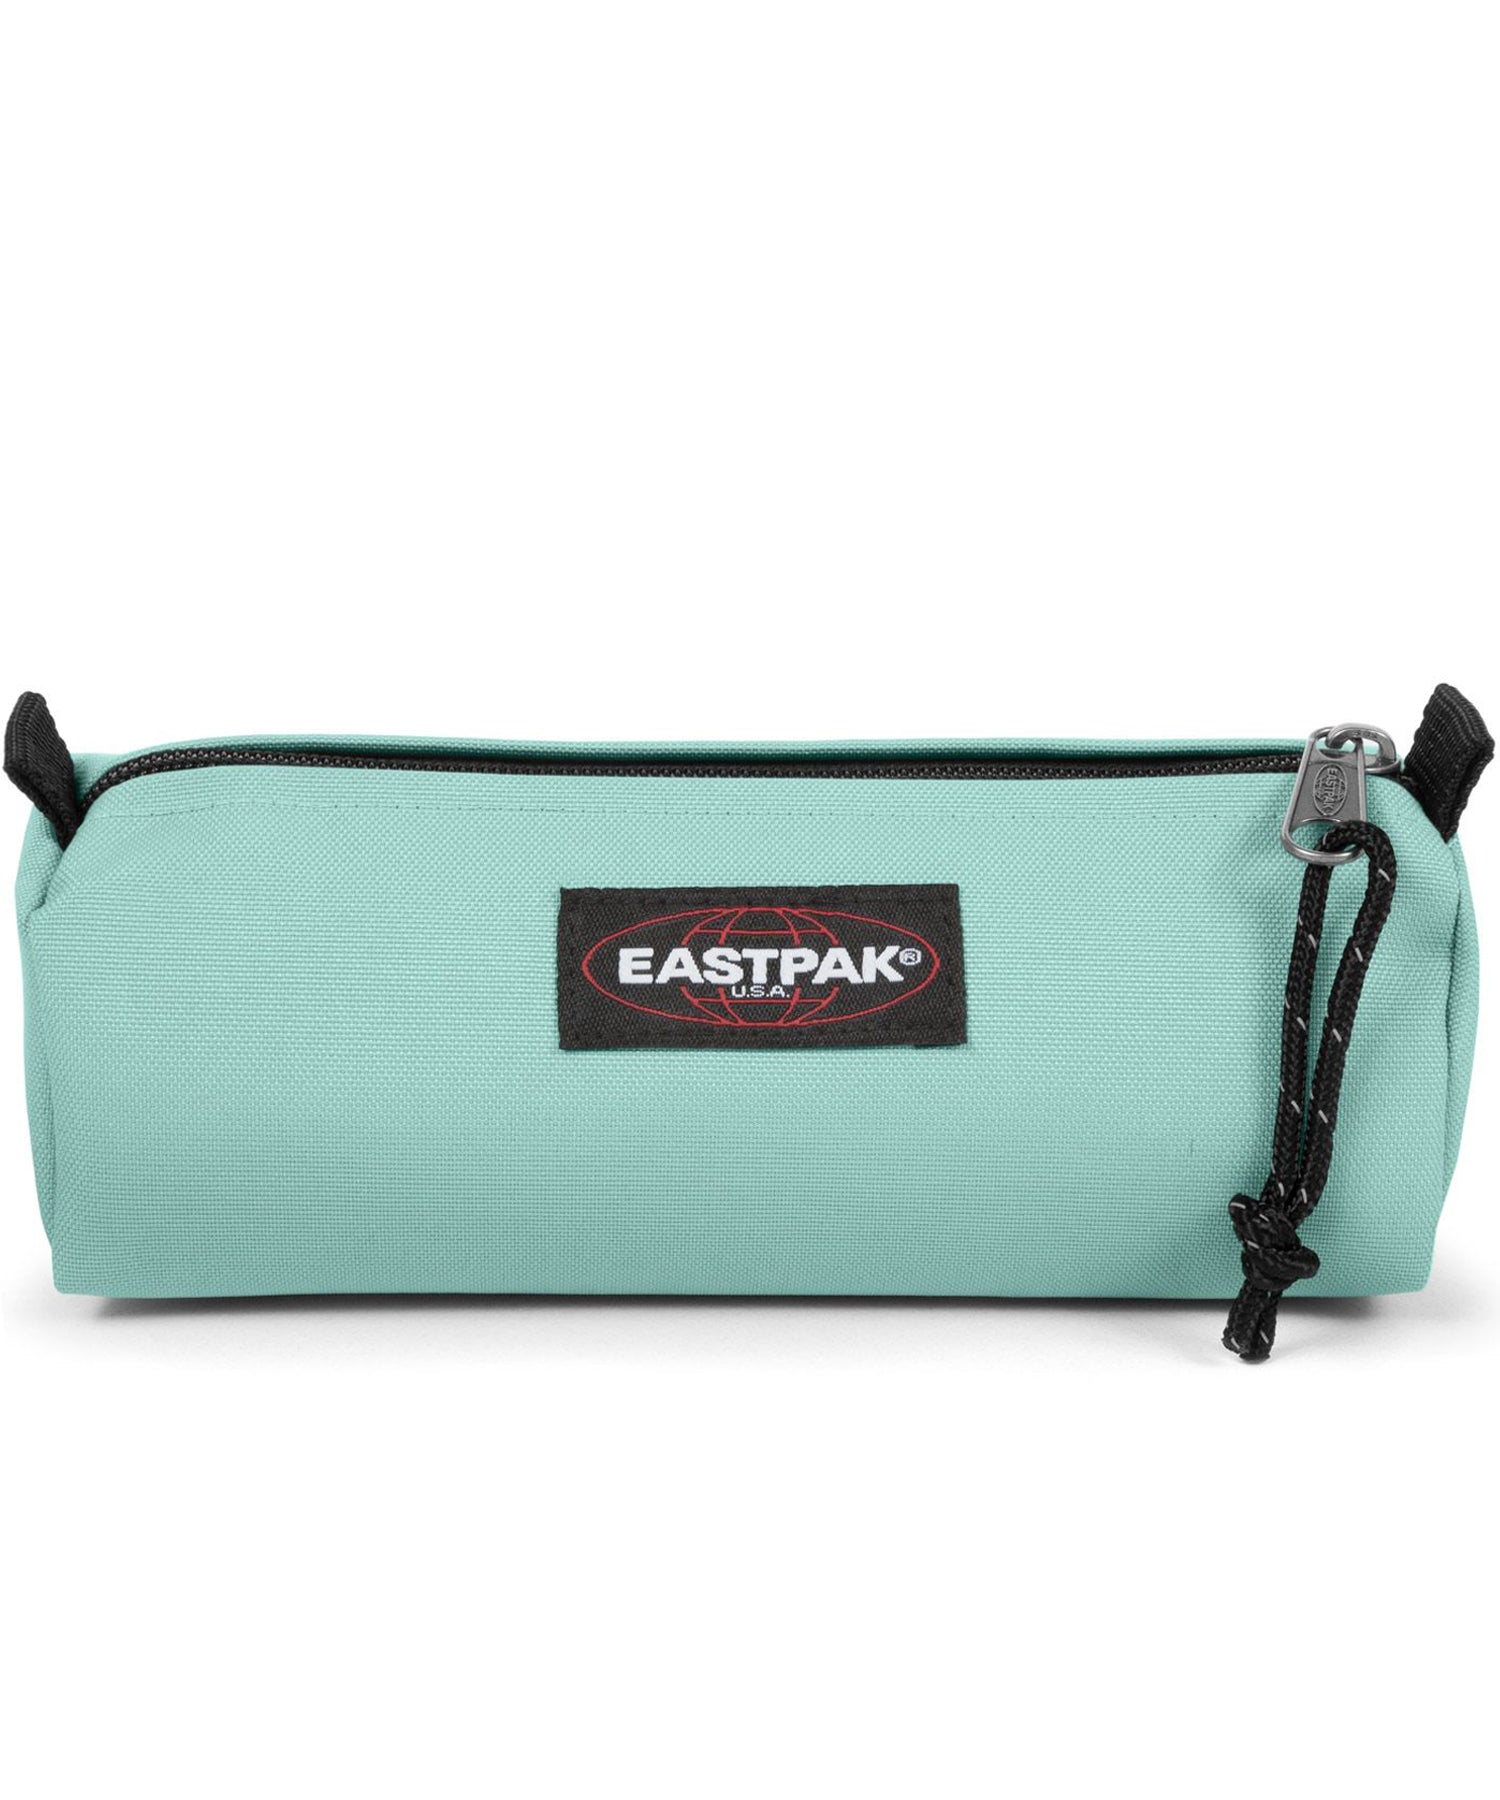 eastpak estuche benchmark de color turquesa claro, practico, sencillo, y duradero, cierre con cremallera.